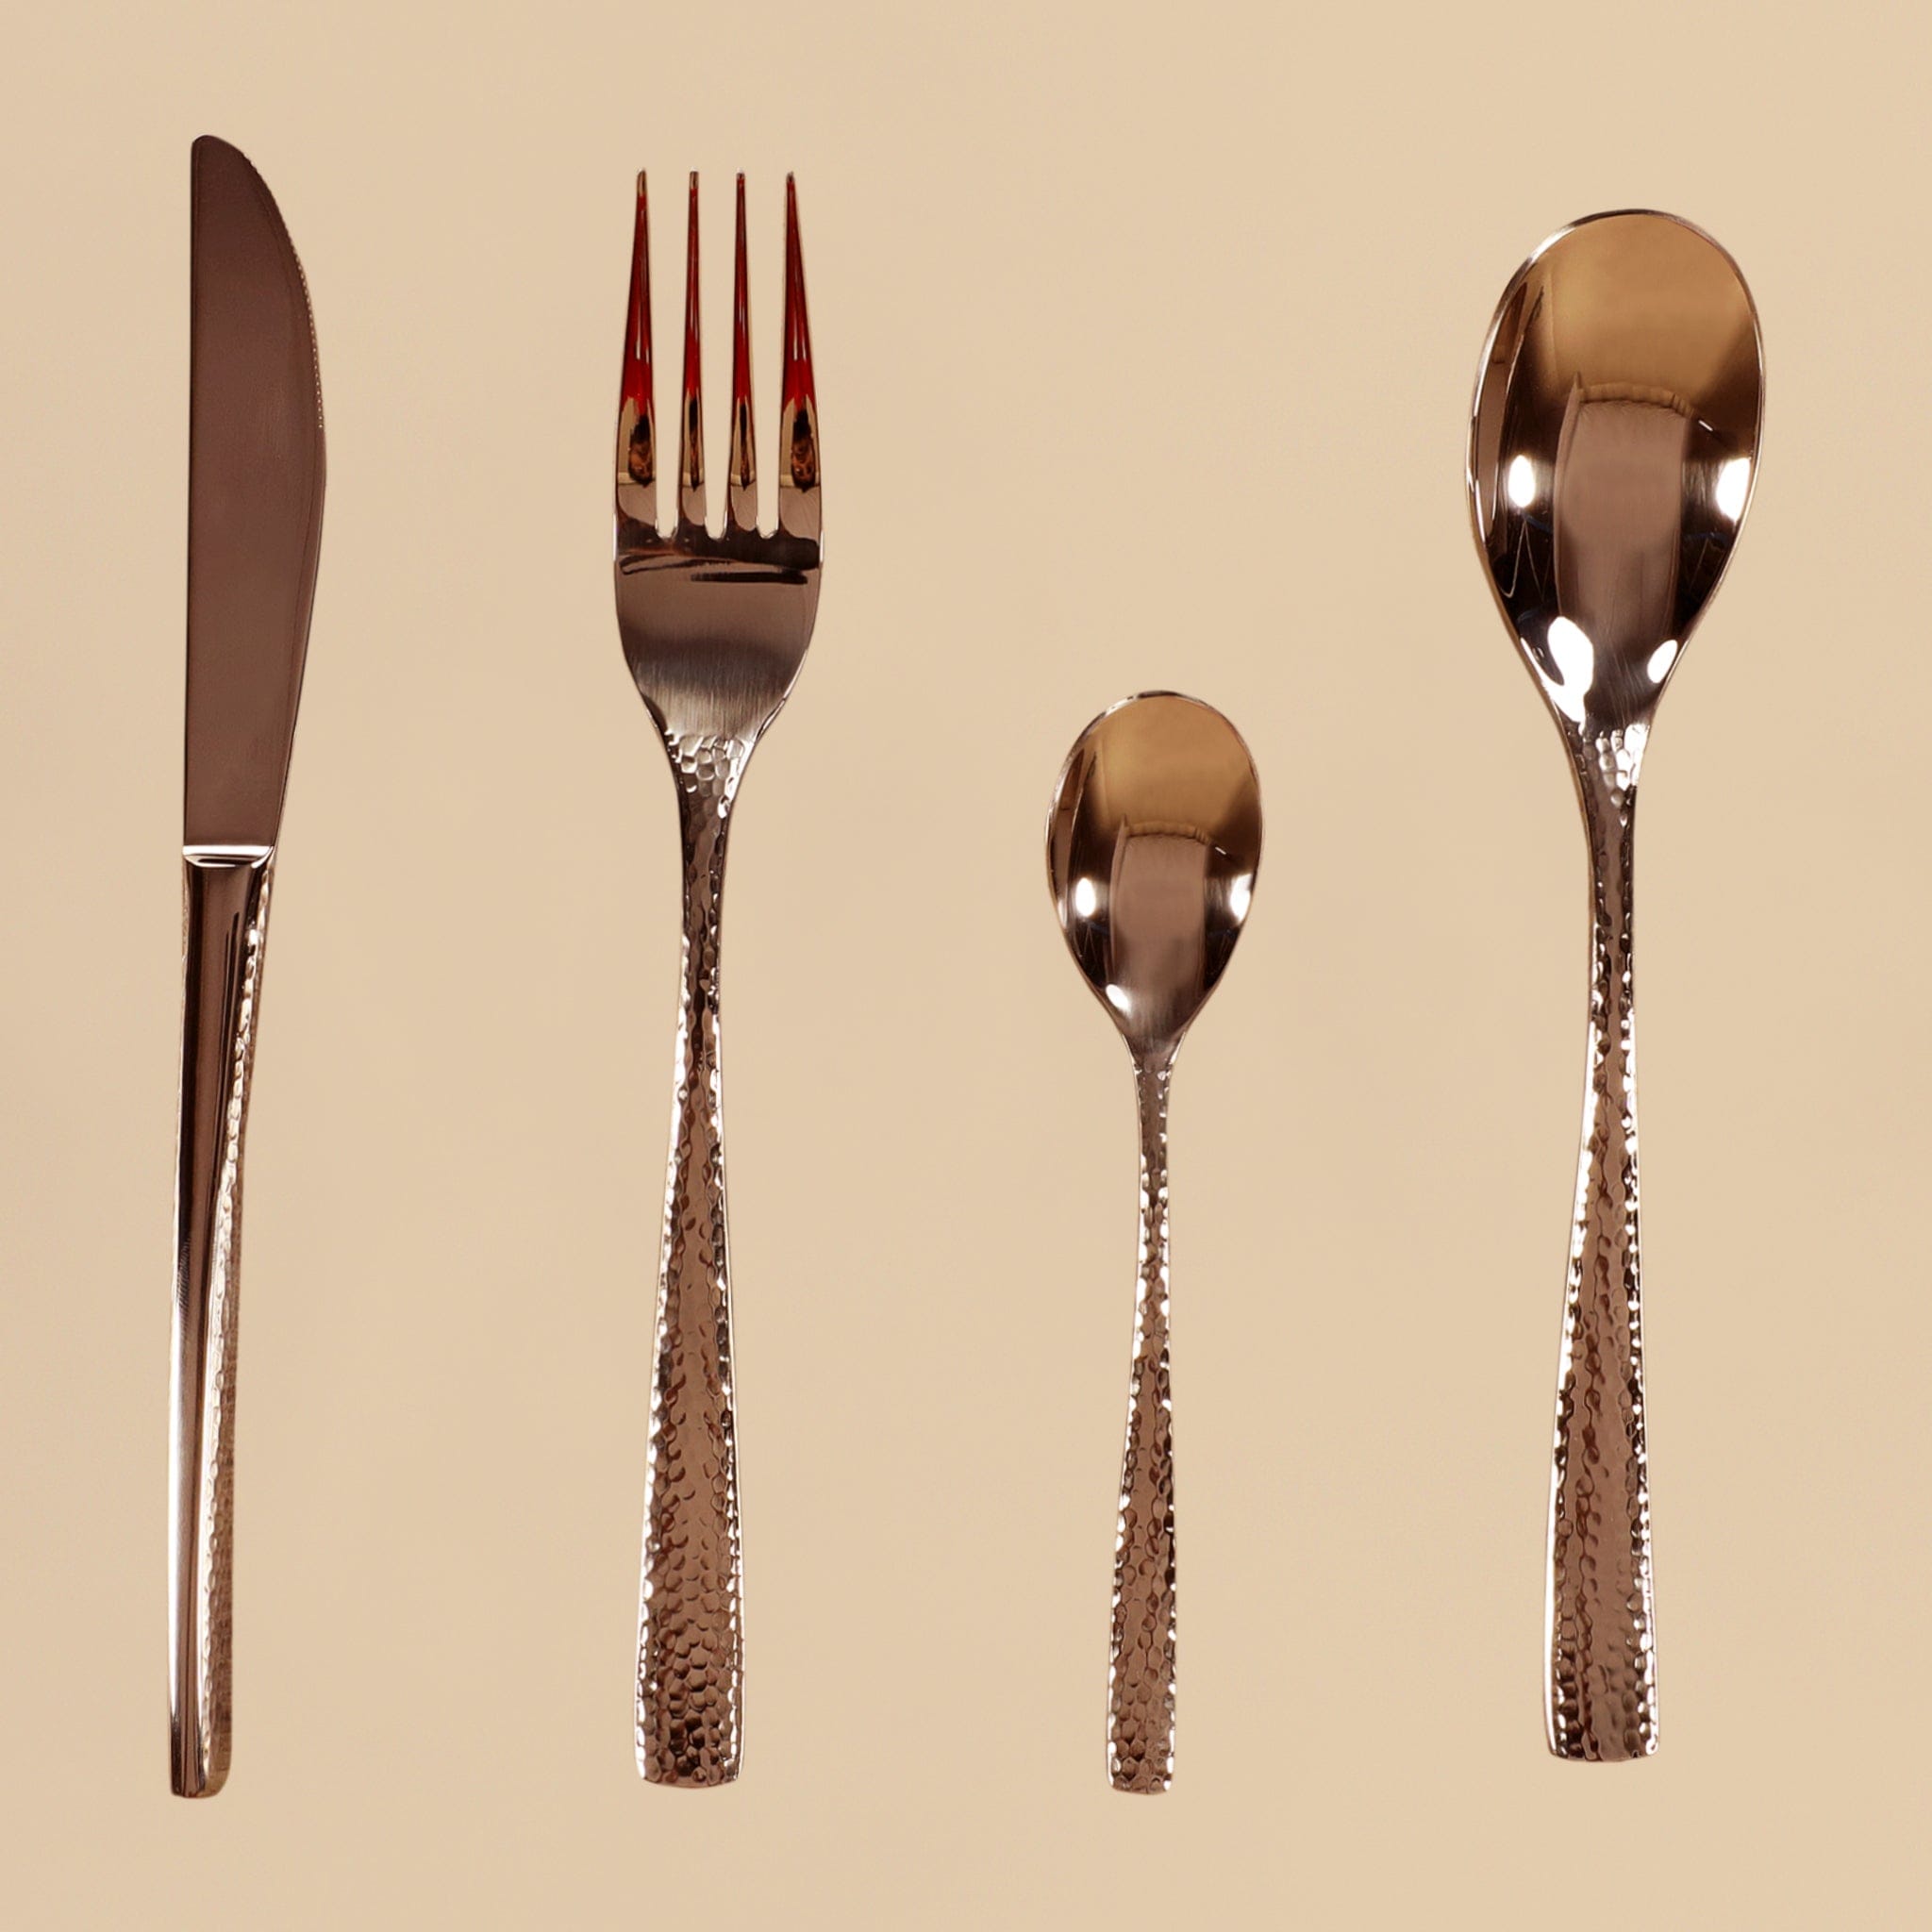 Cutlery Set - Bloomr